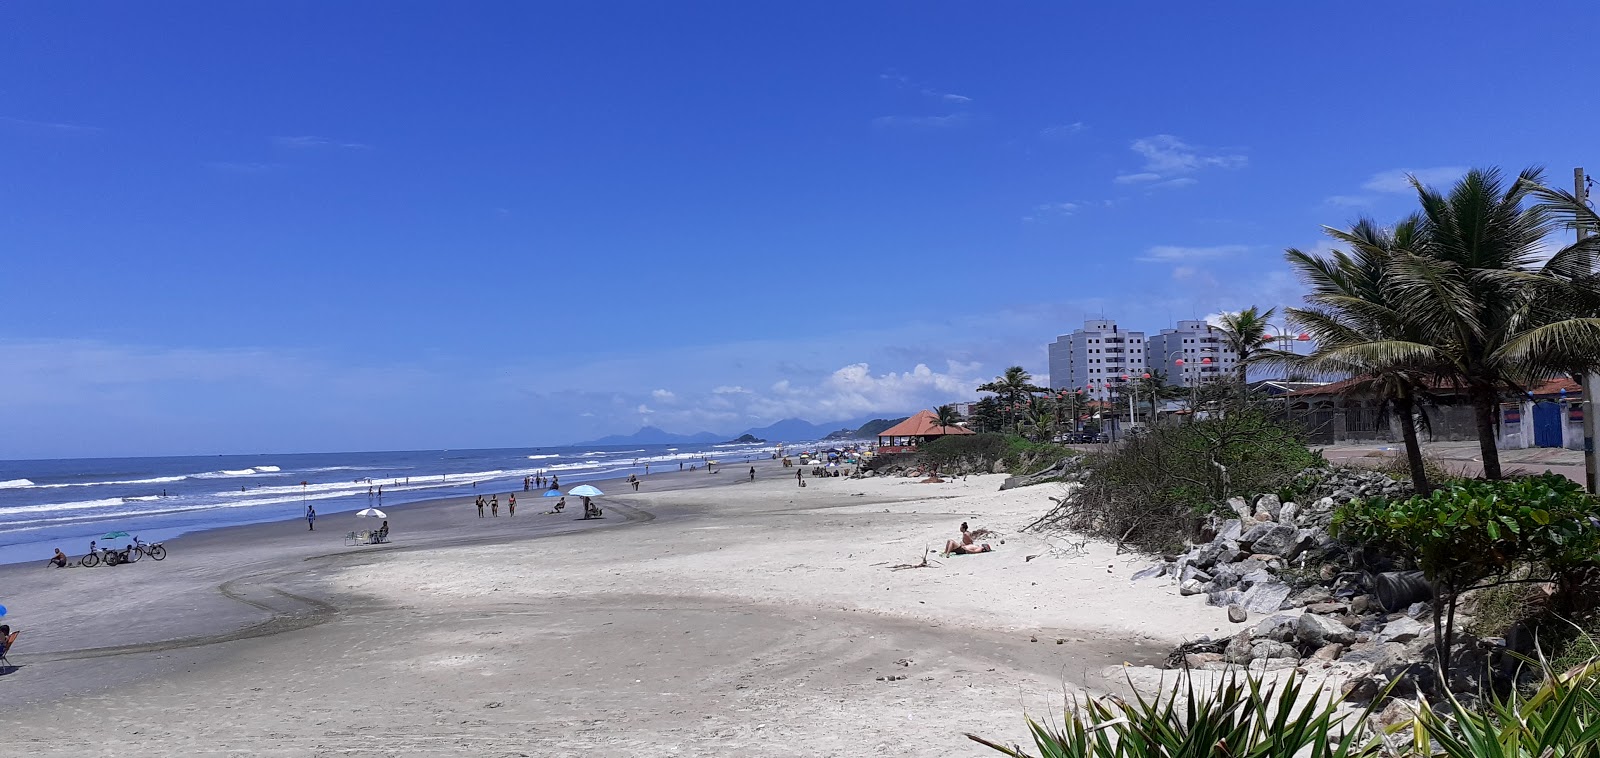 Itanhanhem Plajı'in fotoğrafı parlak ince kum yüzey ile